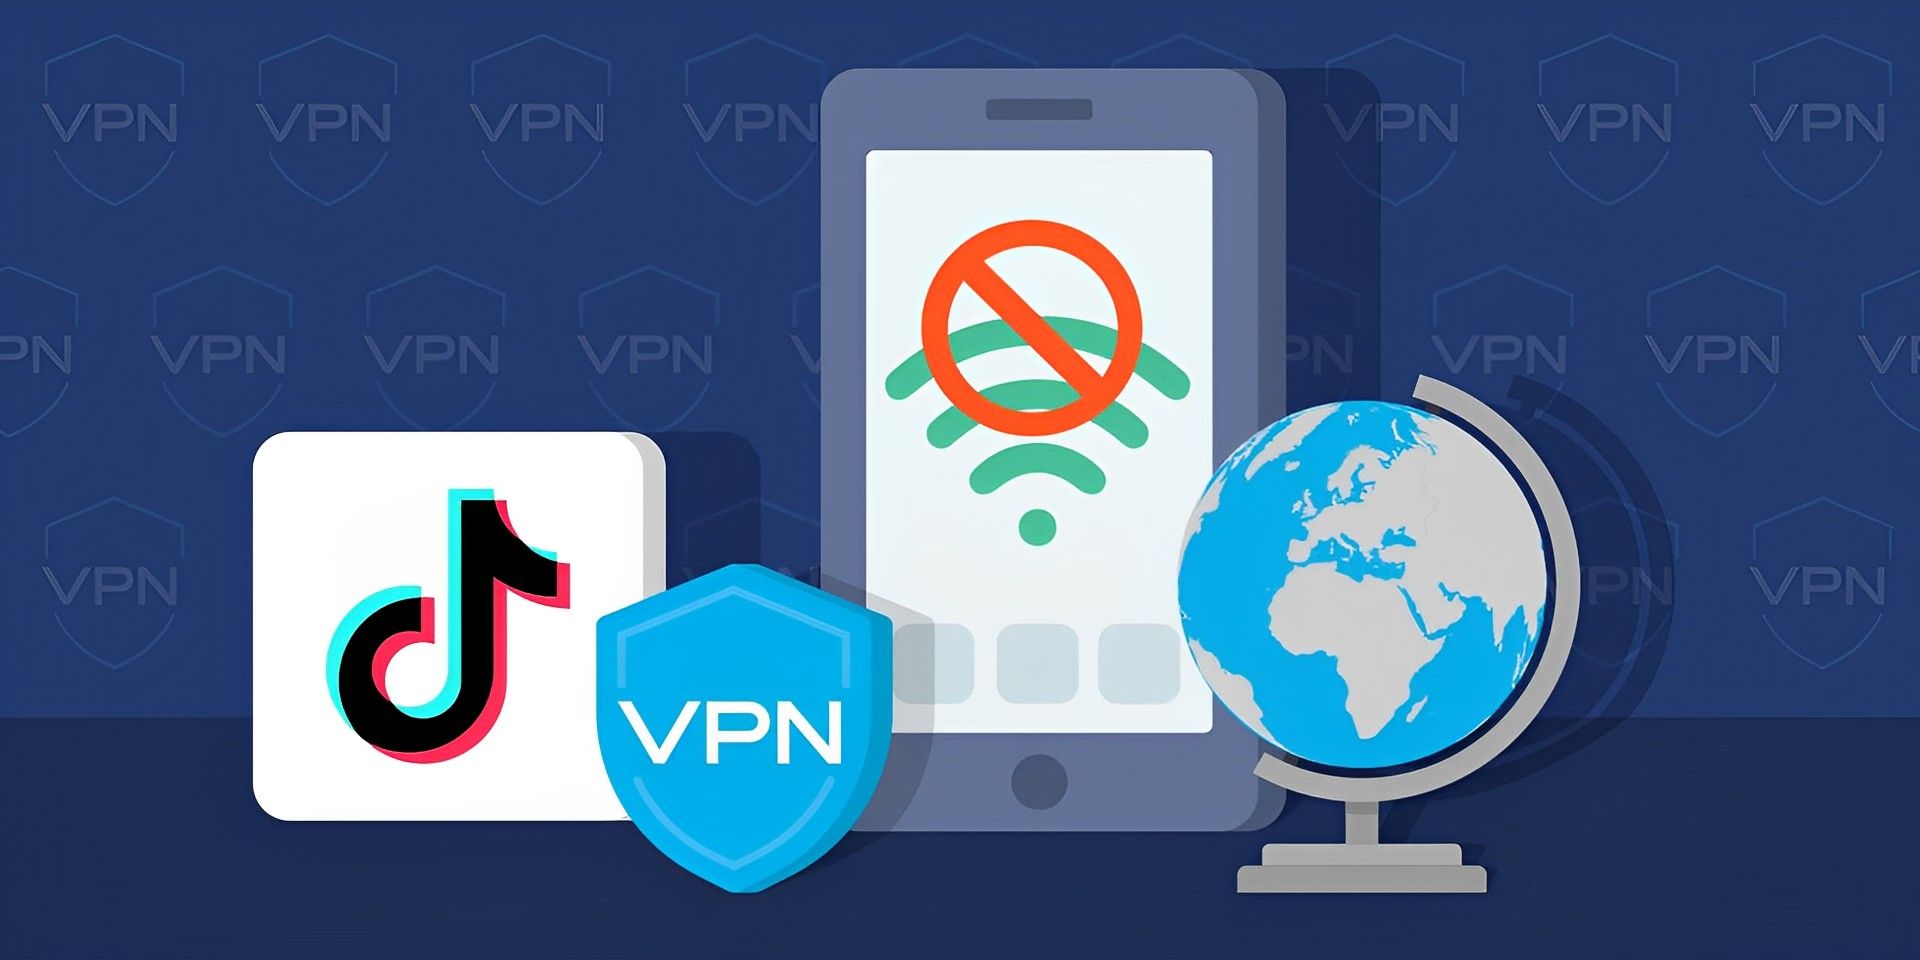 Запрет на vpn в россии. Запрет впн. VPN logo. Запрет впн в России. Впн запретили в России.